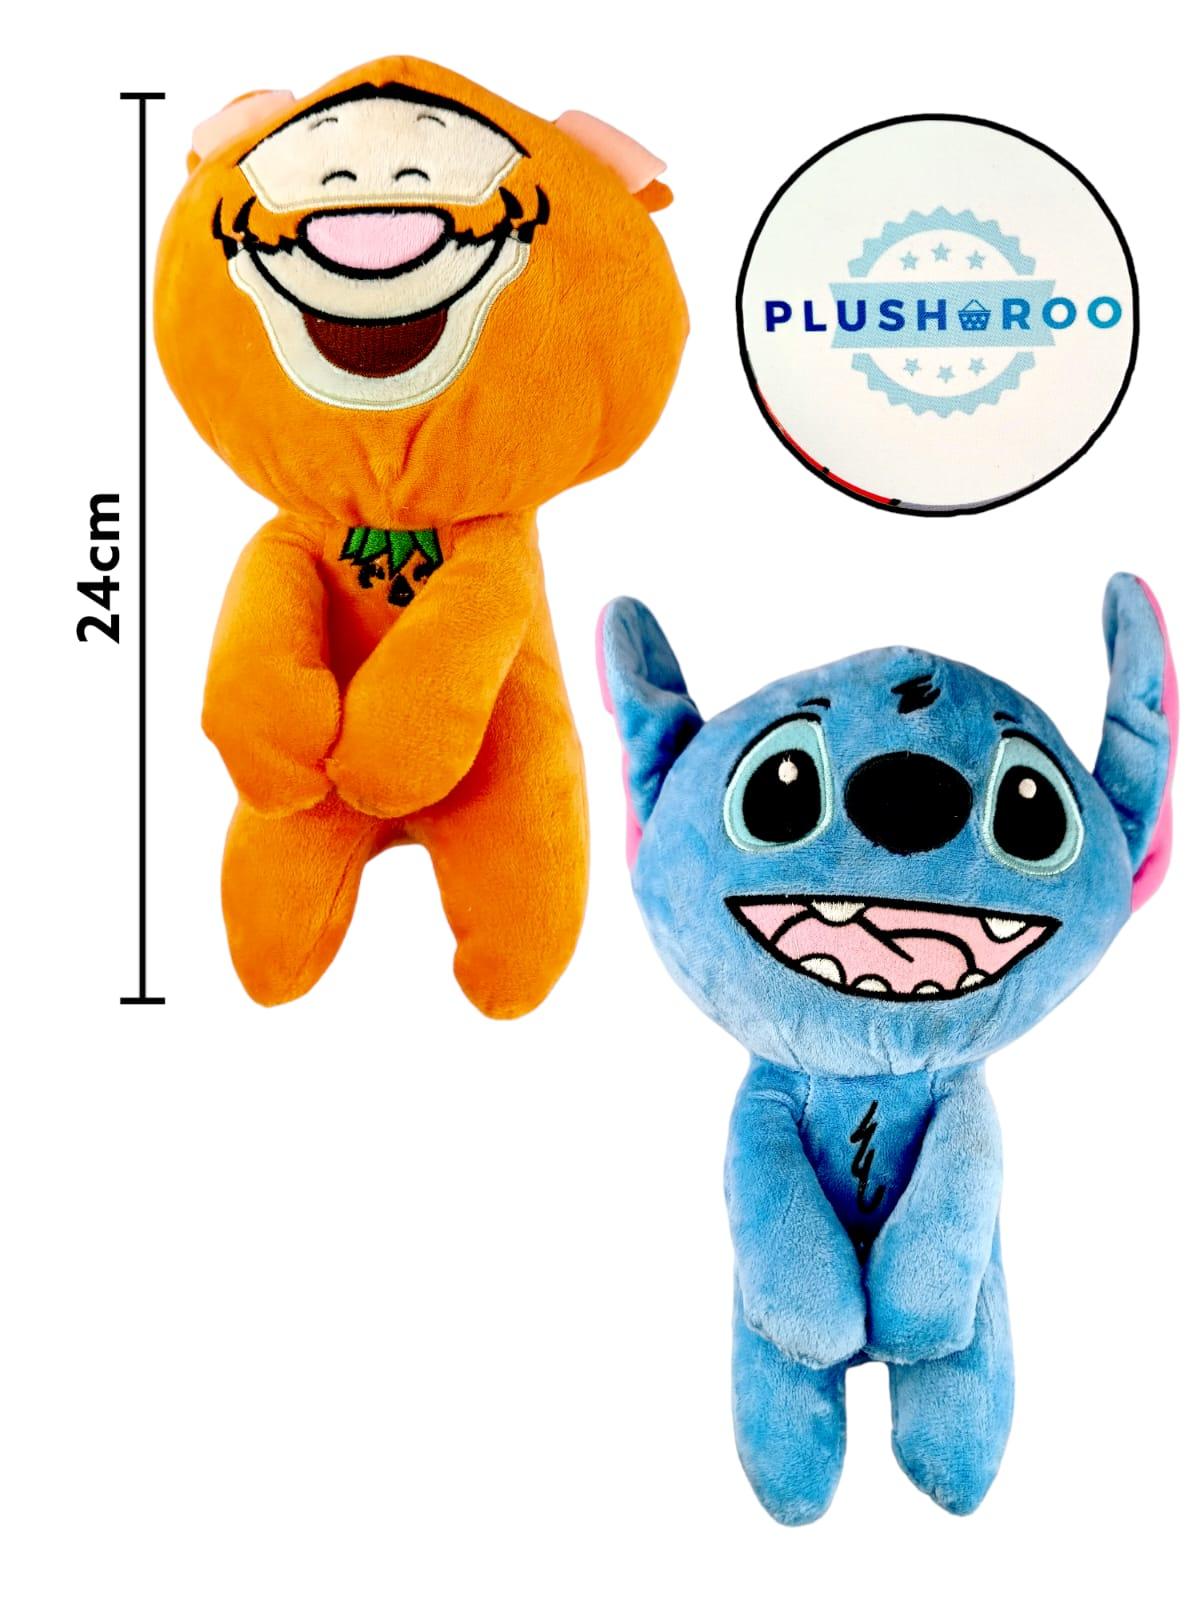 Peluche Premium PLUSHAROO Stitch y Tigger 24cm